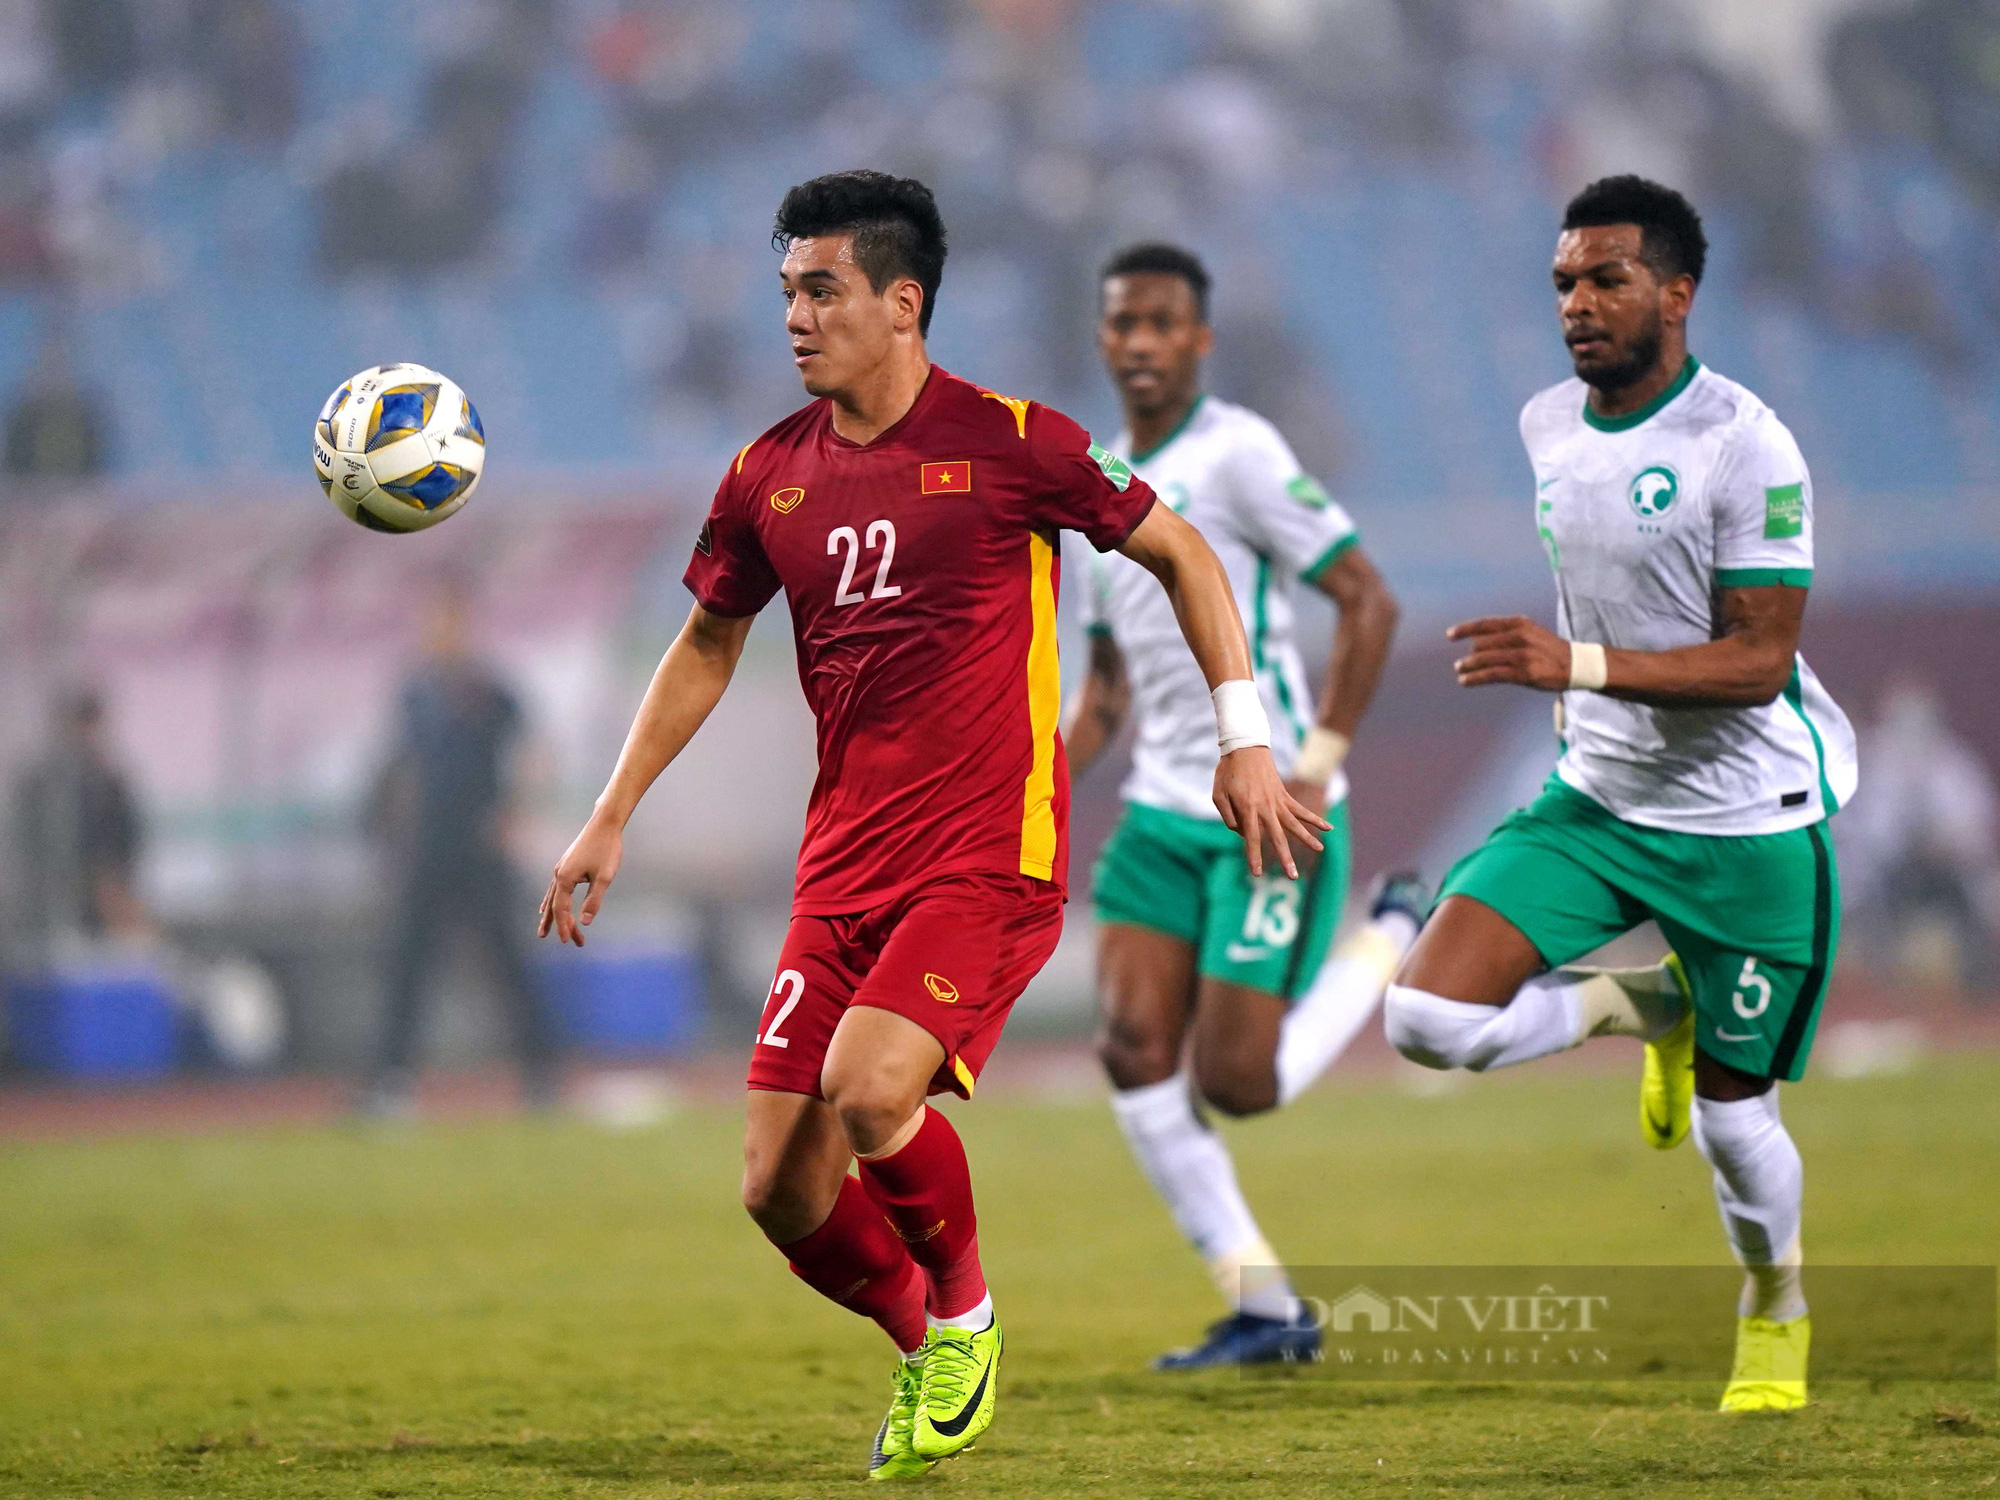 Chùm ảnh tuyển Việt Nam thi đấu lăn xả trước đội tuyển Ả Rập Xê Út - Ảnh 9.